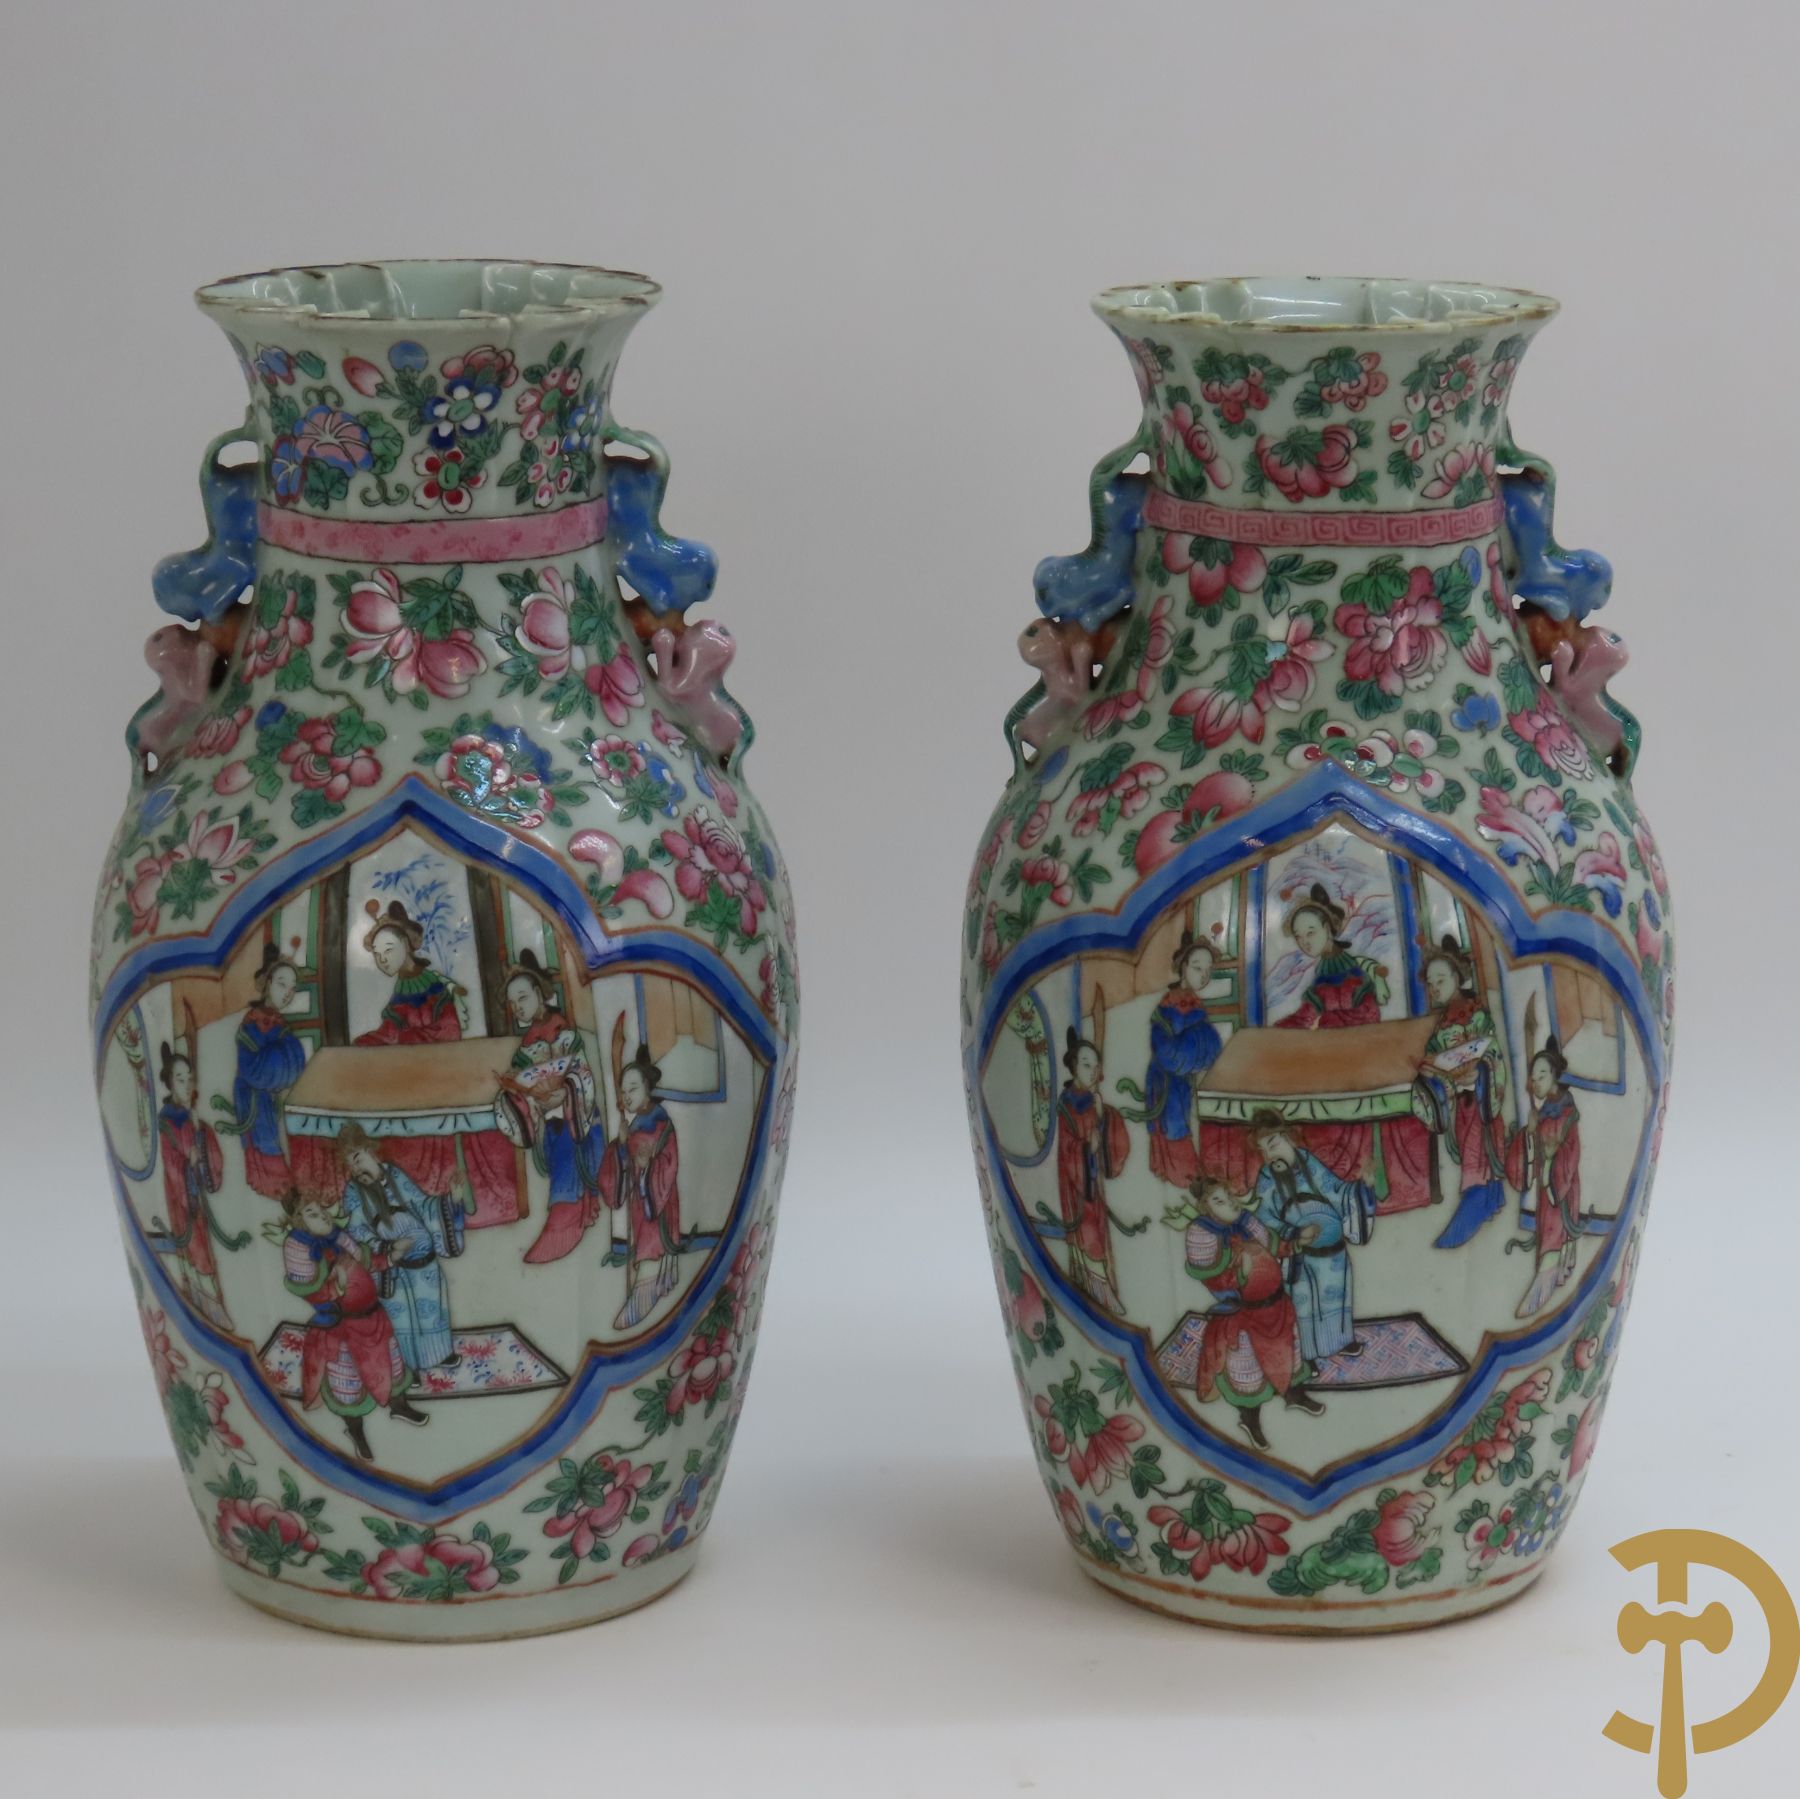 Paar Chinese porseleinen Kanton vazen met waaierende kol, centraal met geanimeerd decor omgeven door vruchtendecor, 19e